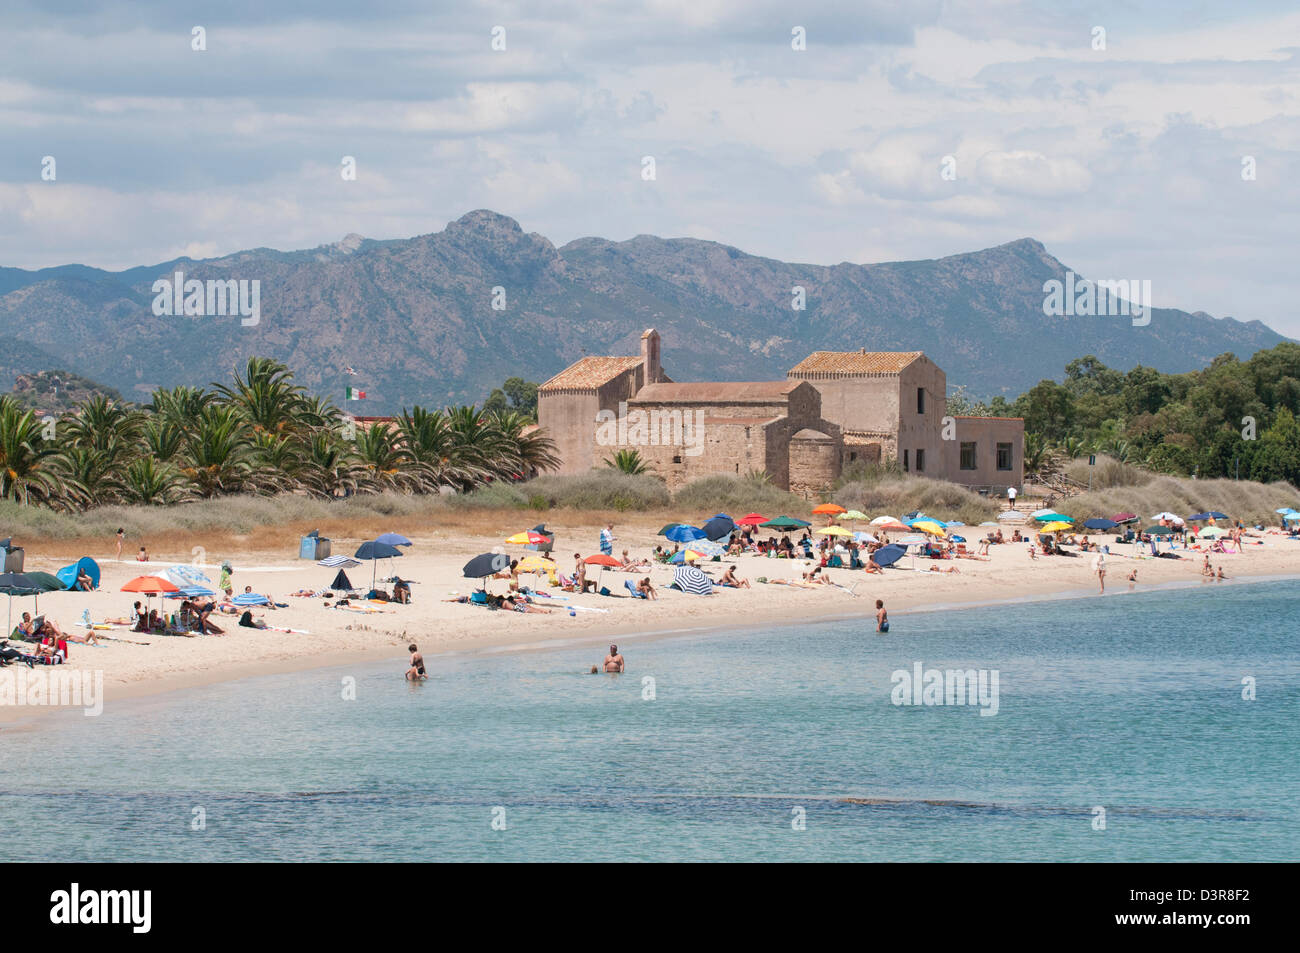 Beach in Sardinia, Italy Stock Photo